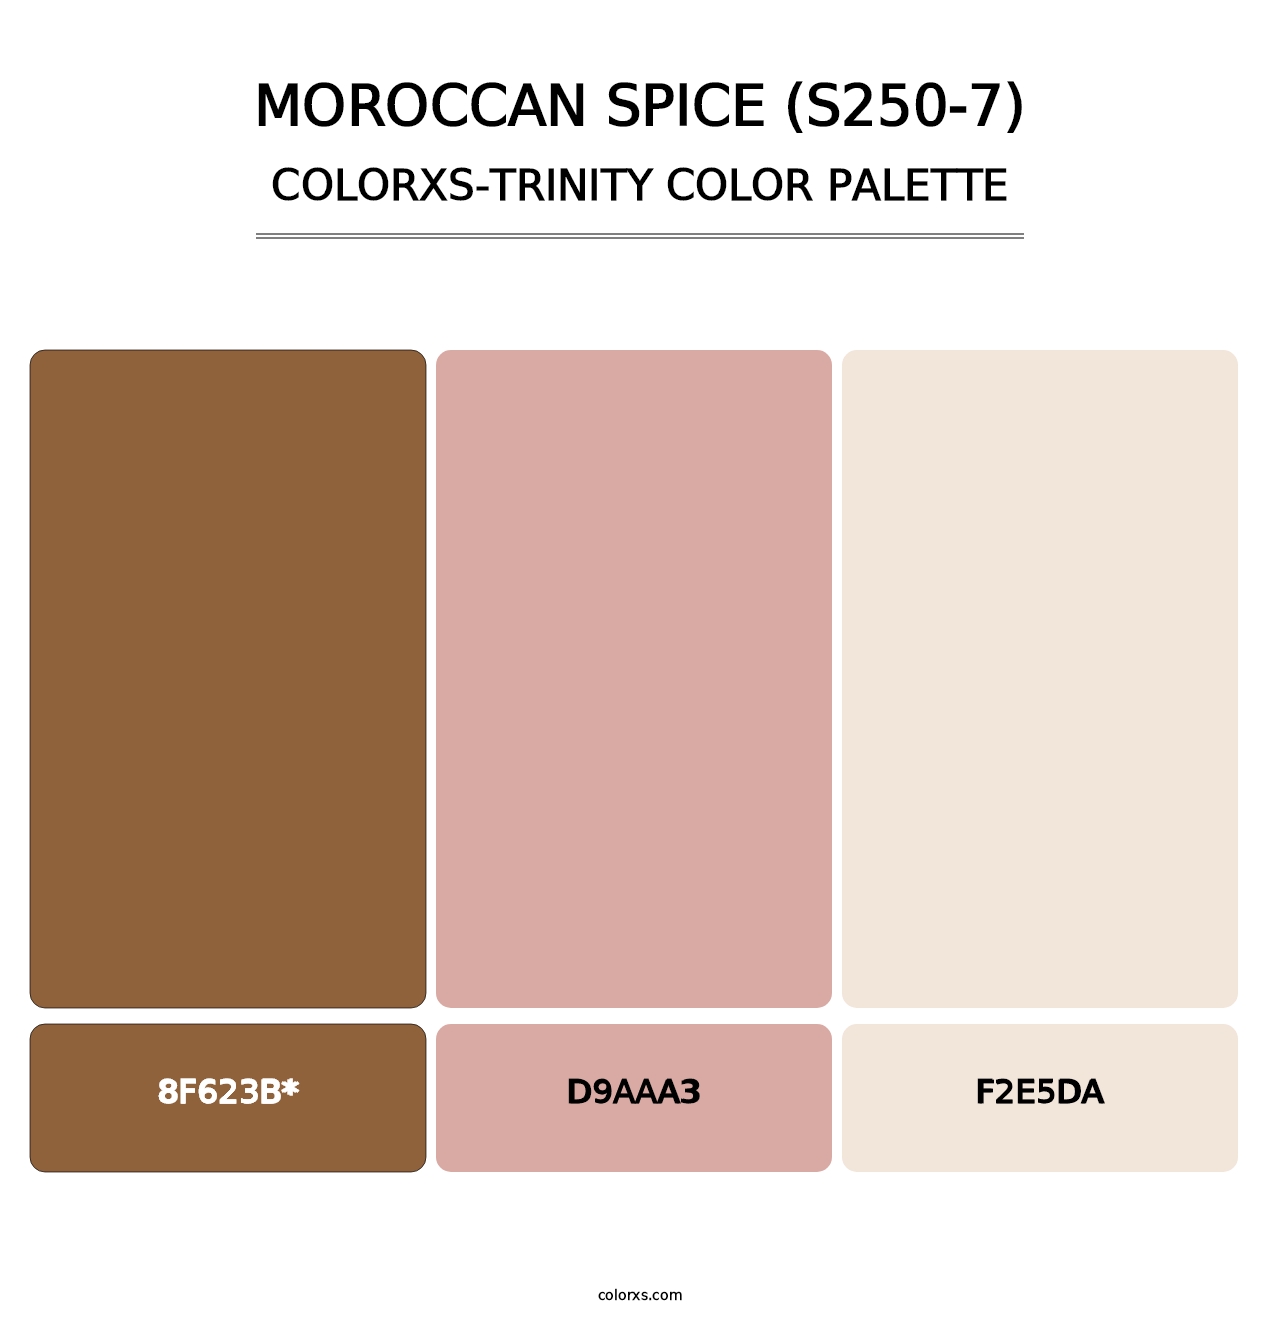 Moroccan Spice (S250-7) - Colorxs Trinity Palette